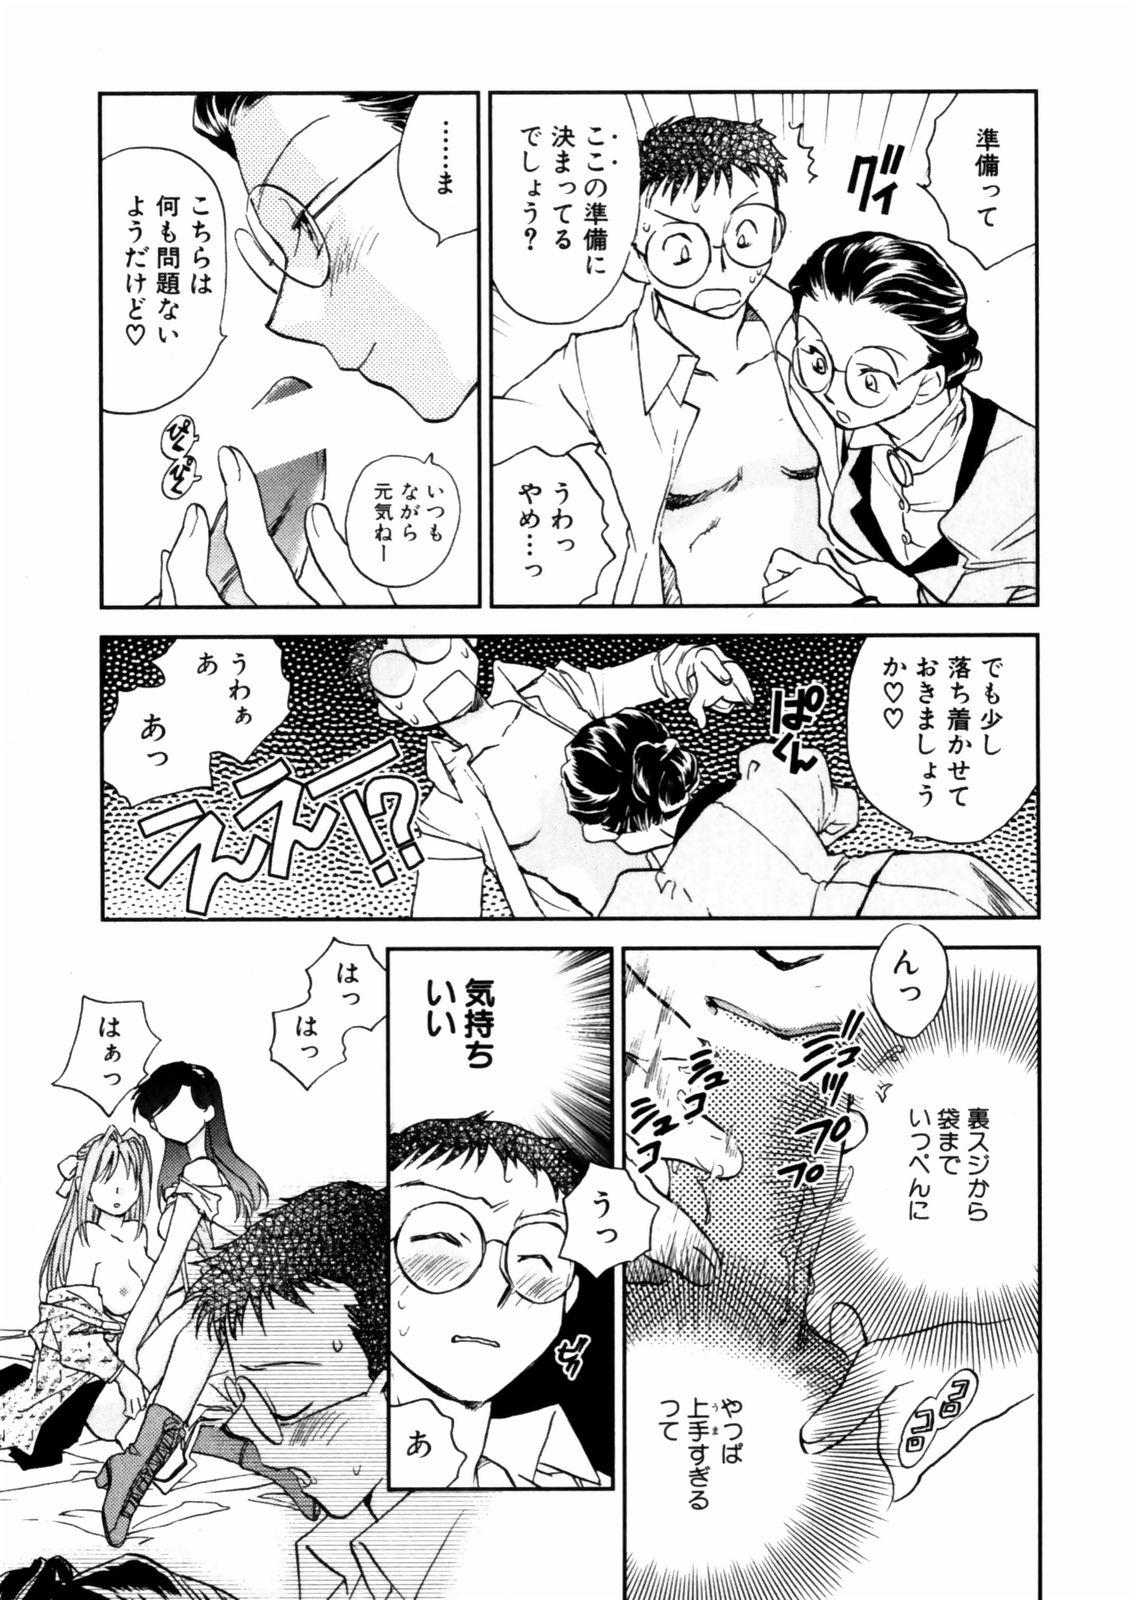 [Okano Ahiru] Hanasake ! Otome Juku (Otome Private Tutoring School) Vol.2 10